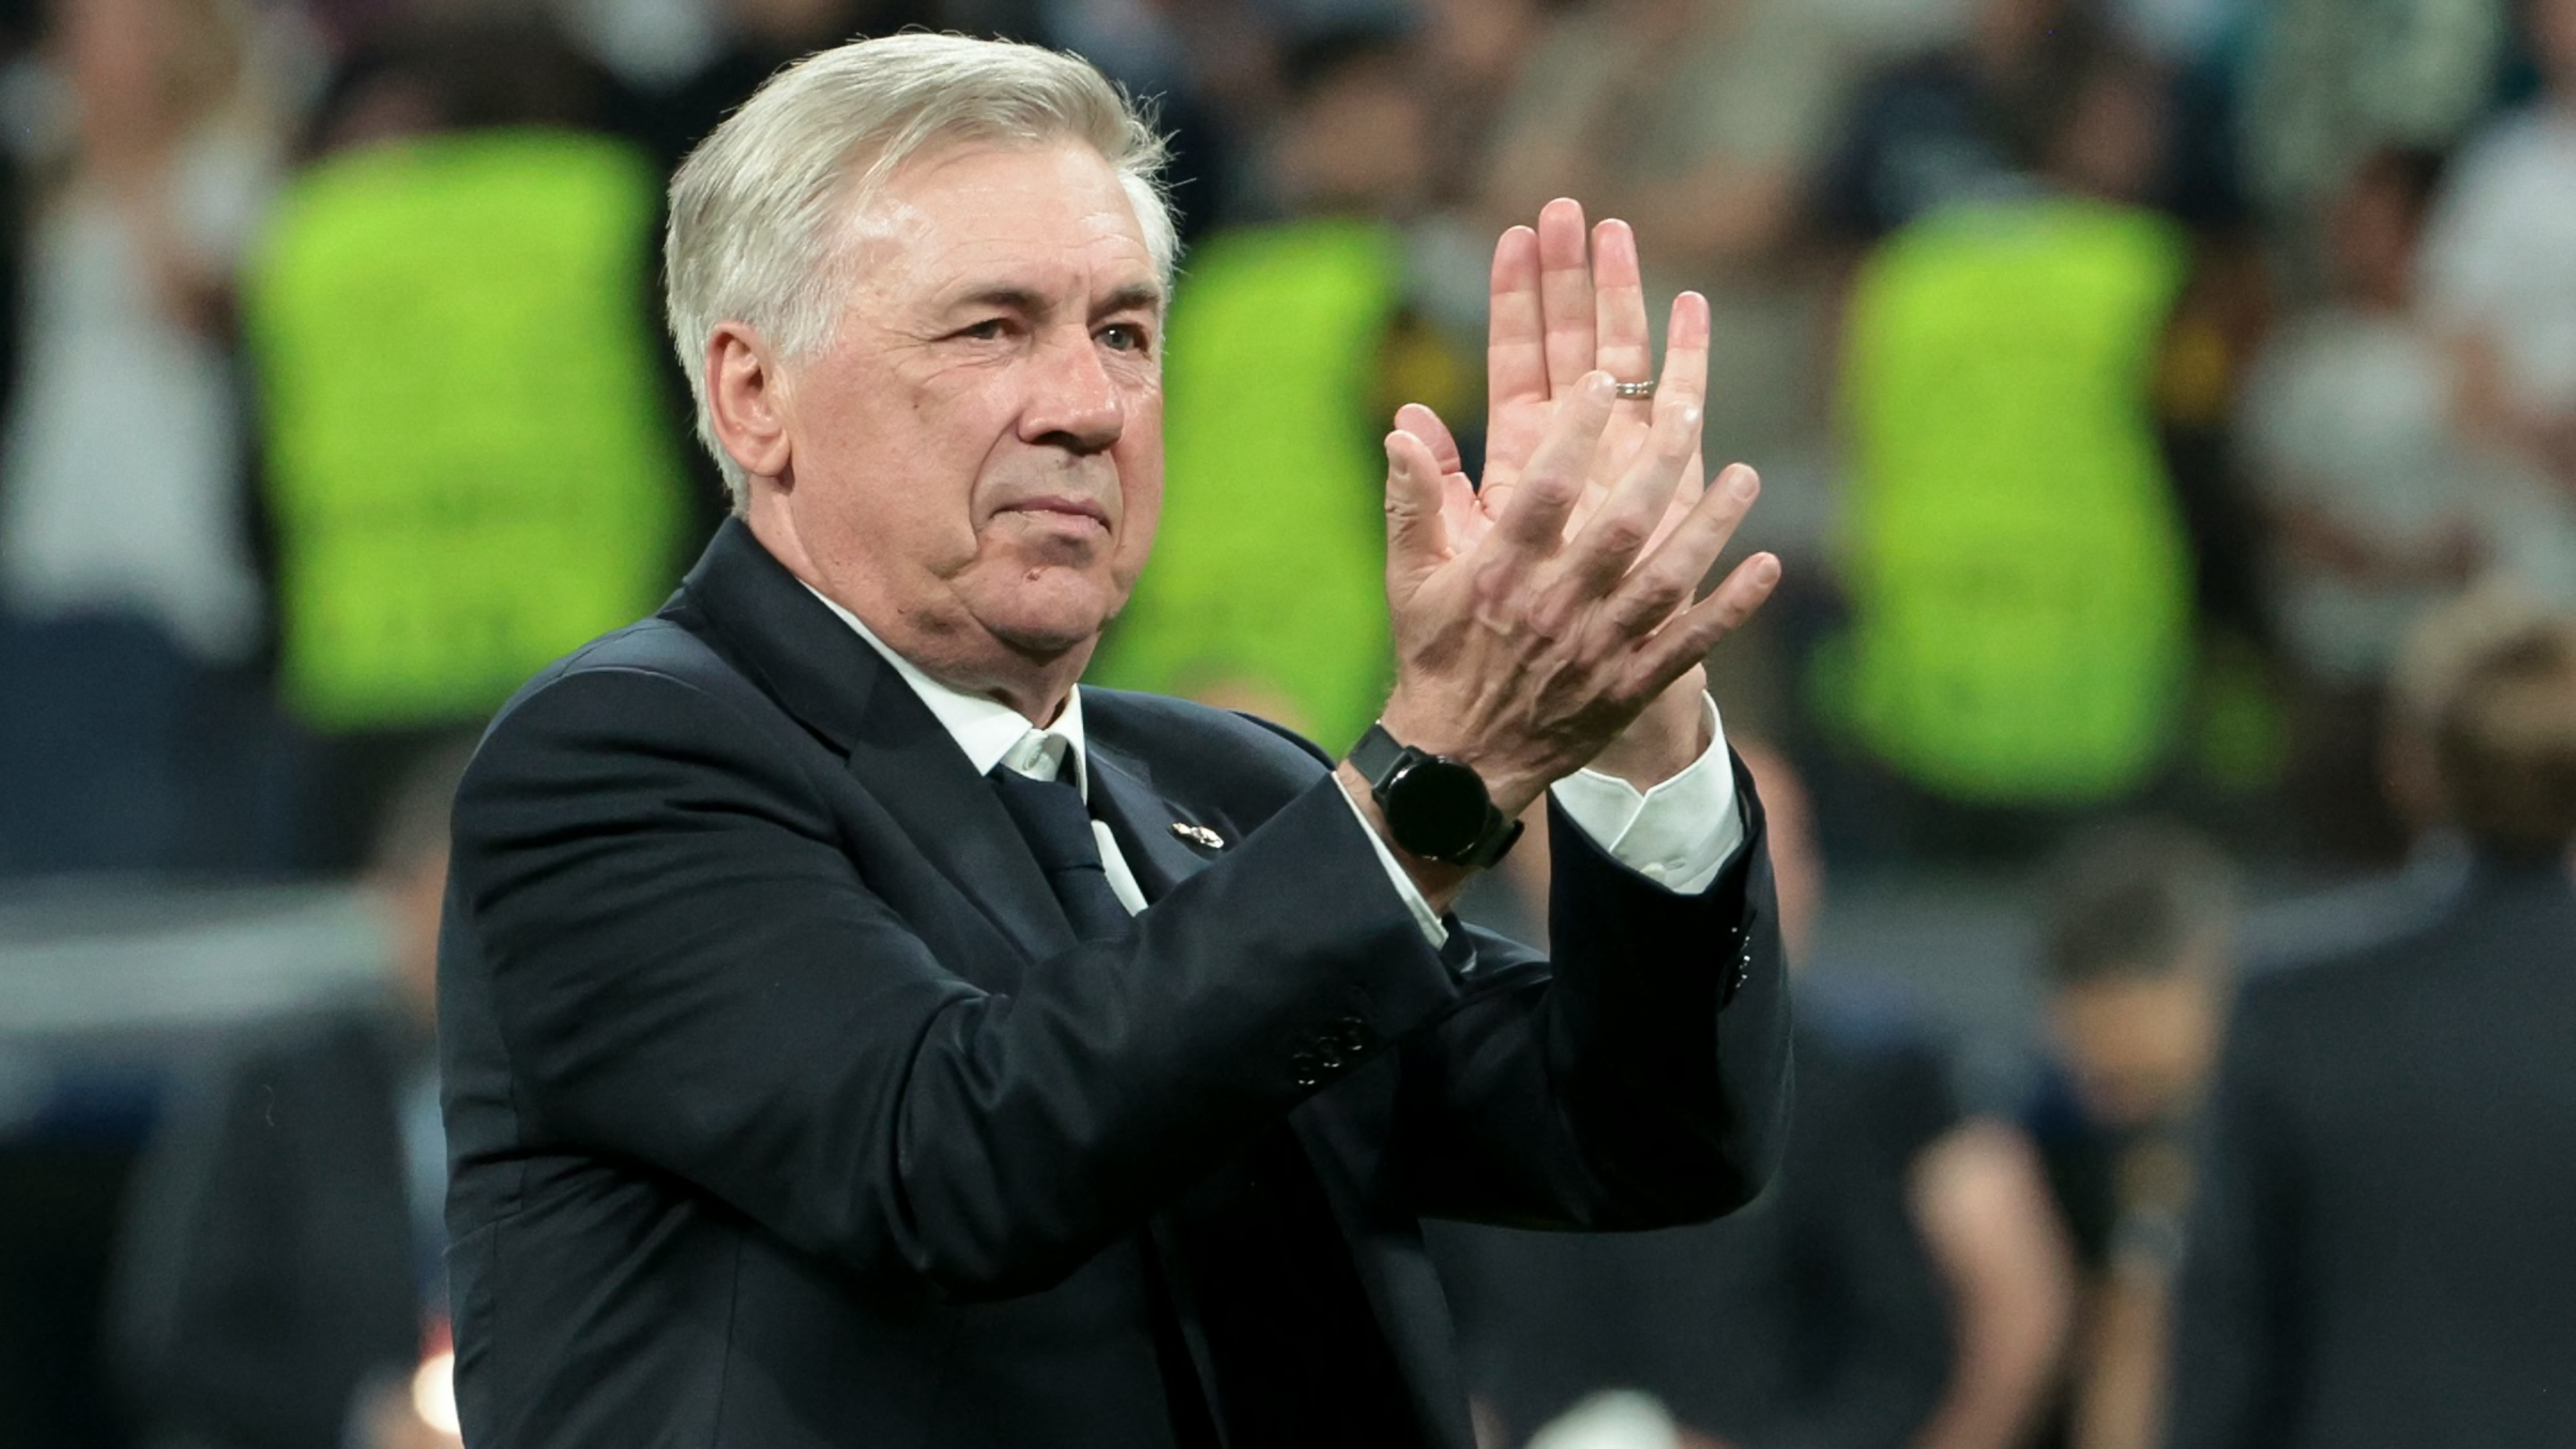 Carlo Ancelotti bites back at Bayern Munich complaints after Champions League drama